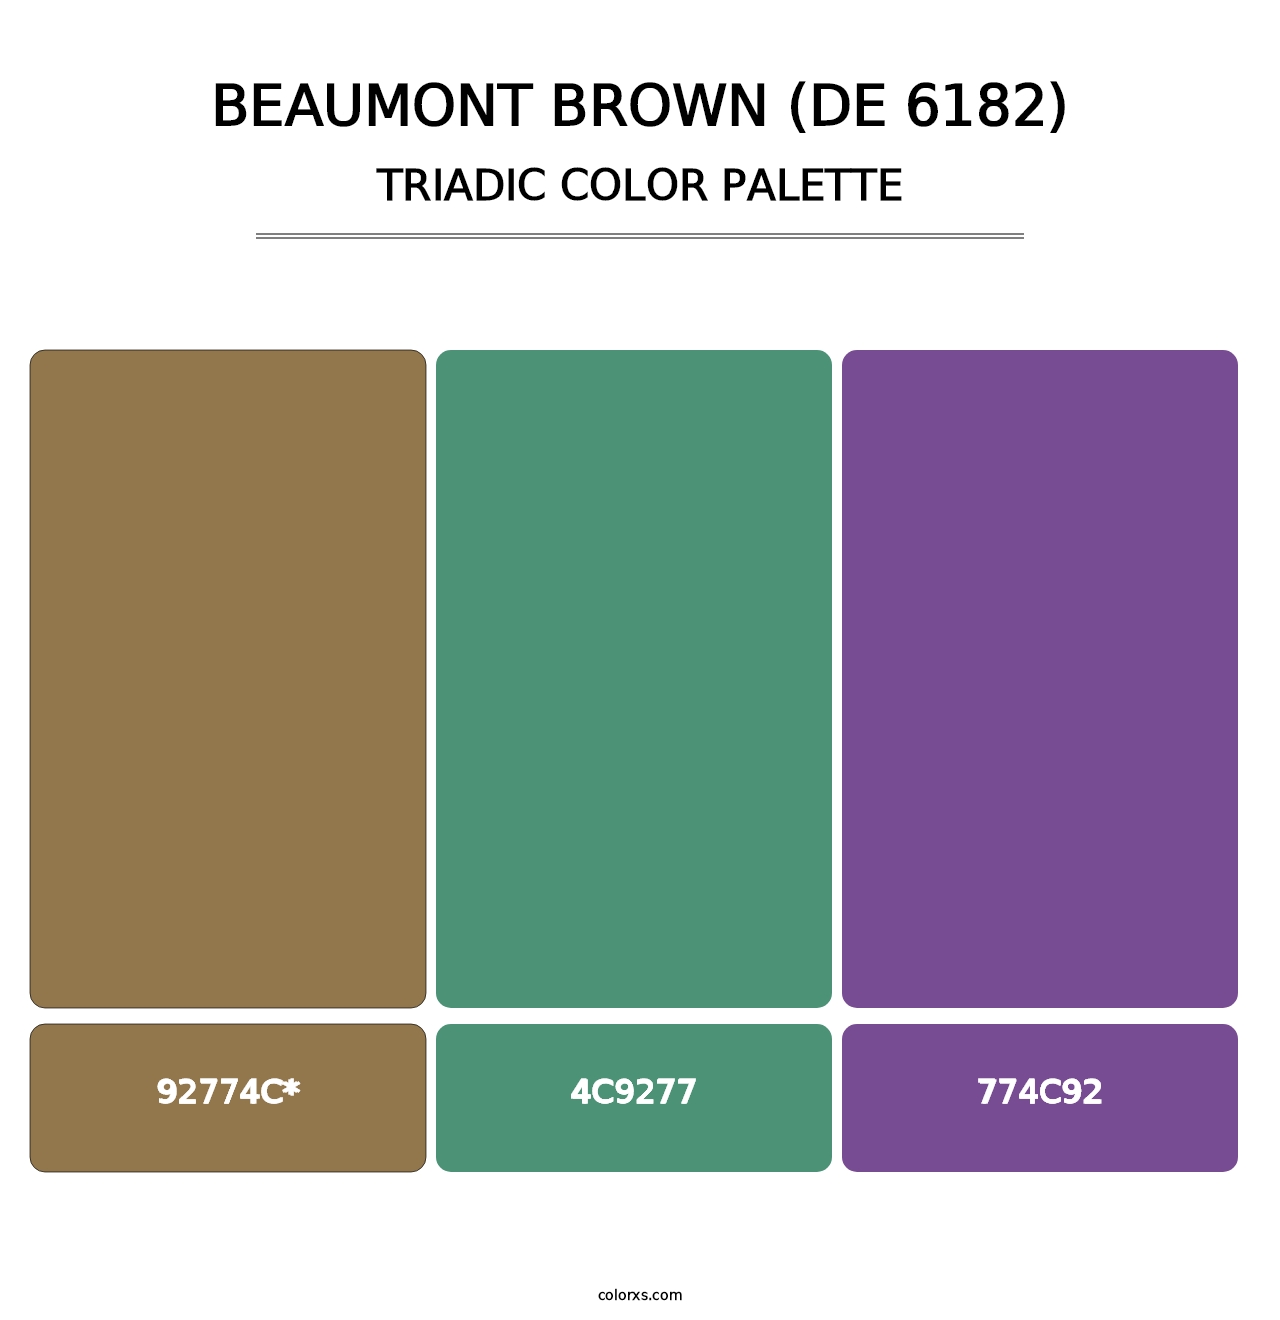 Beaumont Brown (DE 6182) - Triadic Color Palette